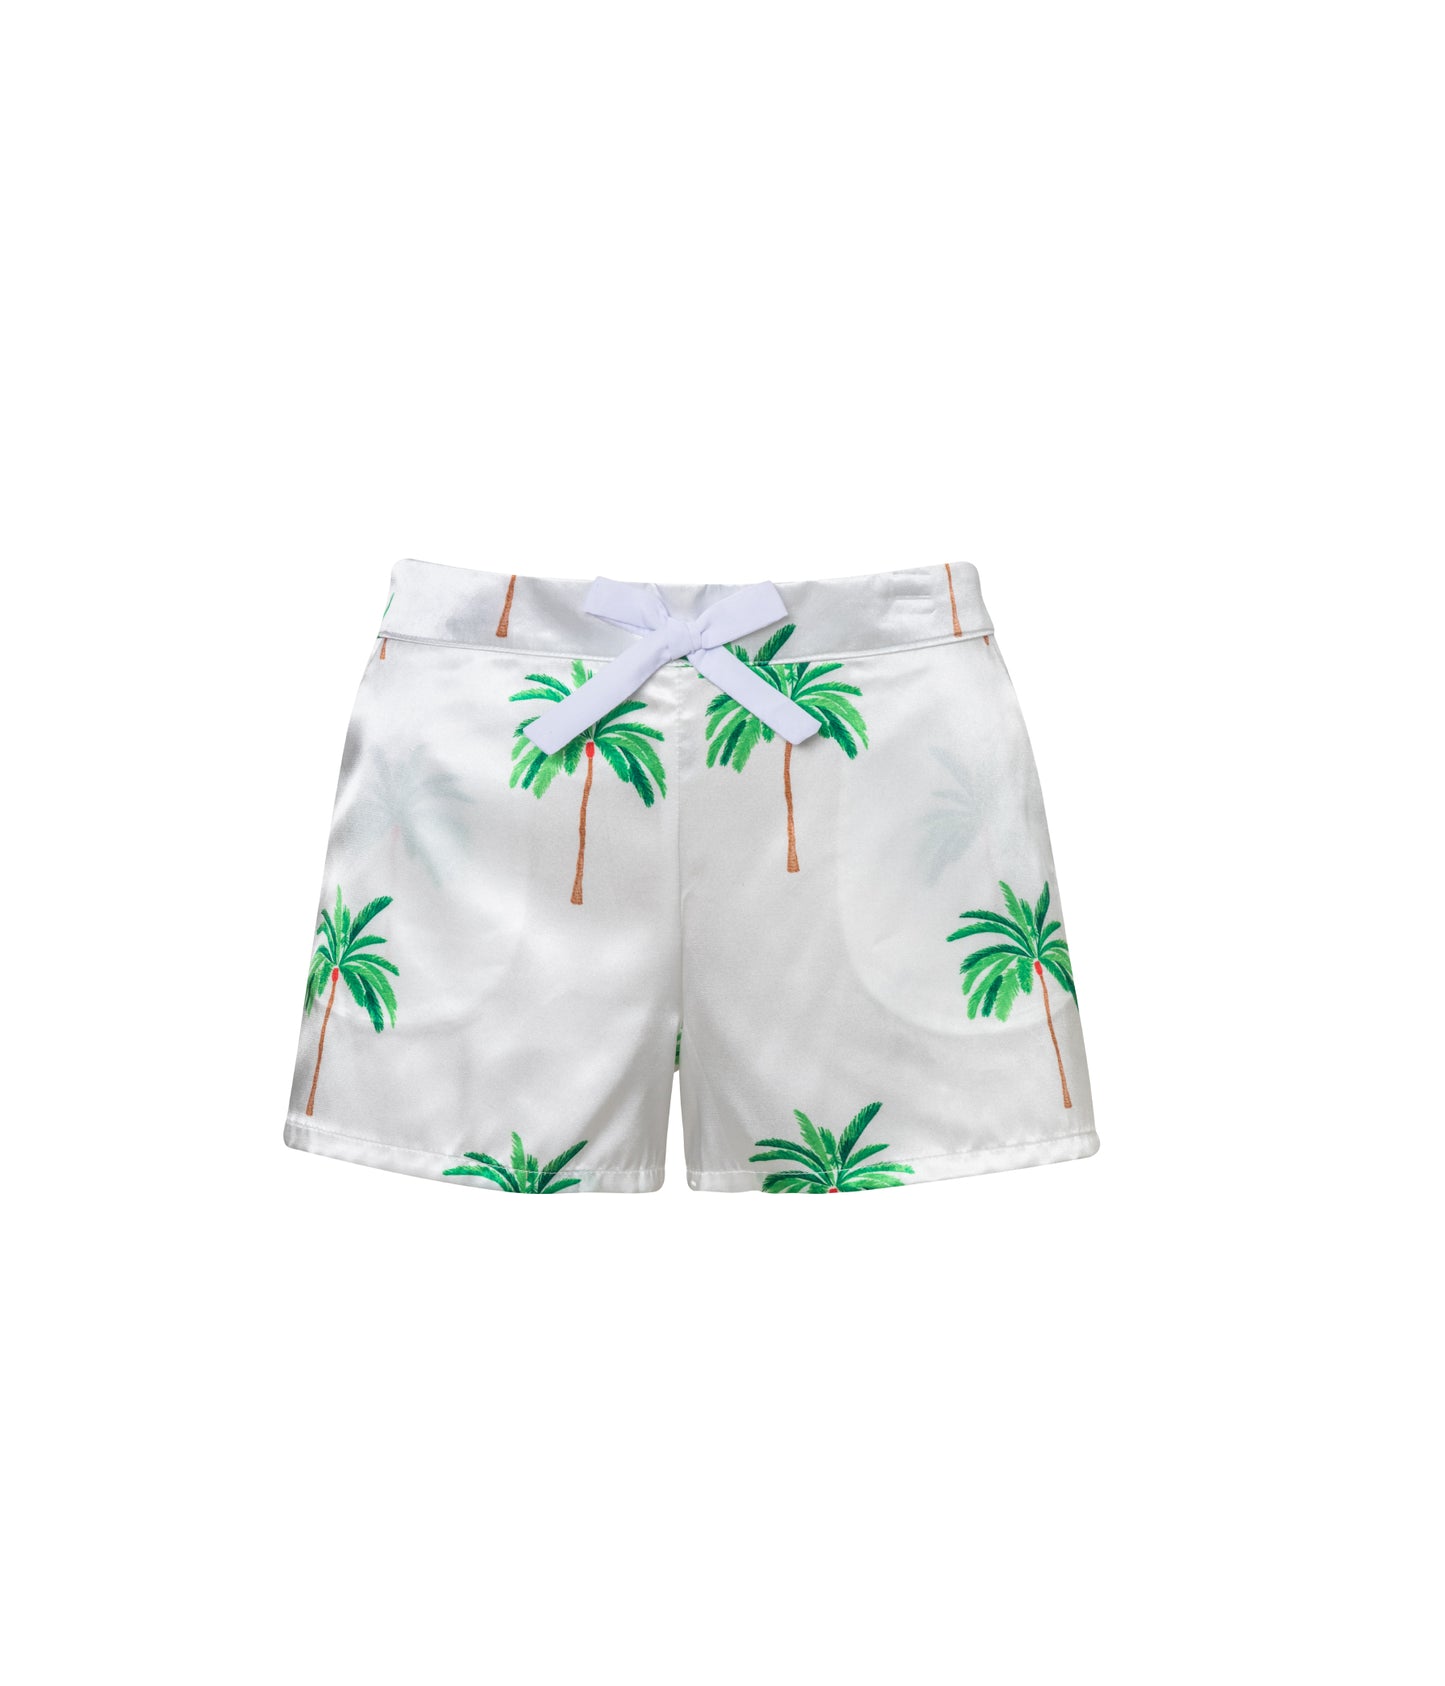 Verdelimon - Shorts - Santorini - Printed - White Palmeras - Front